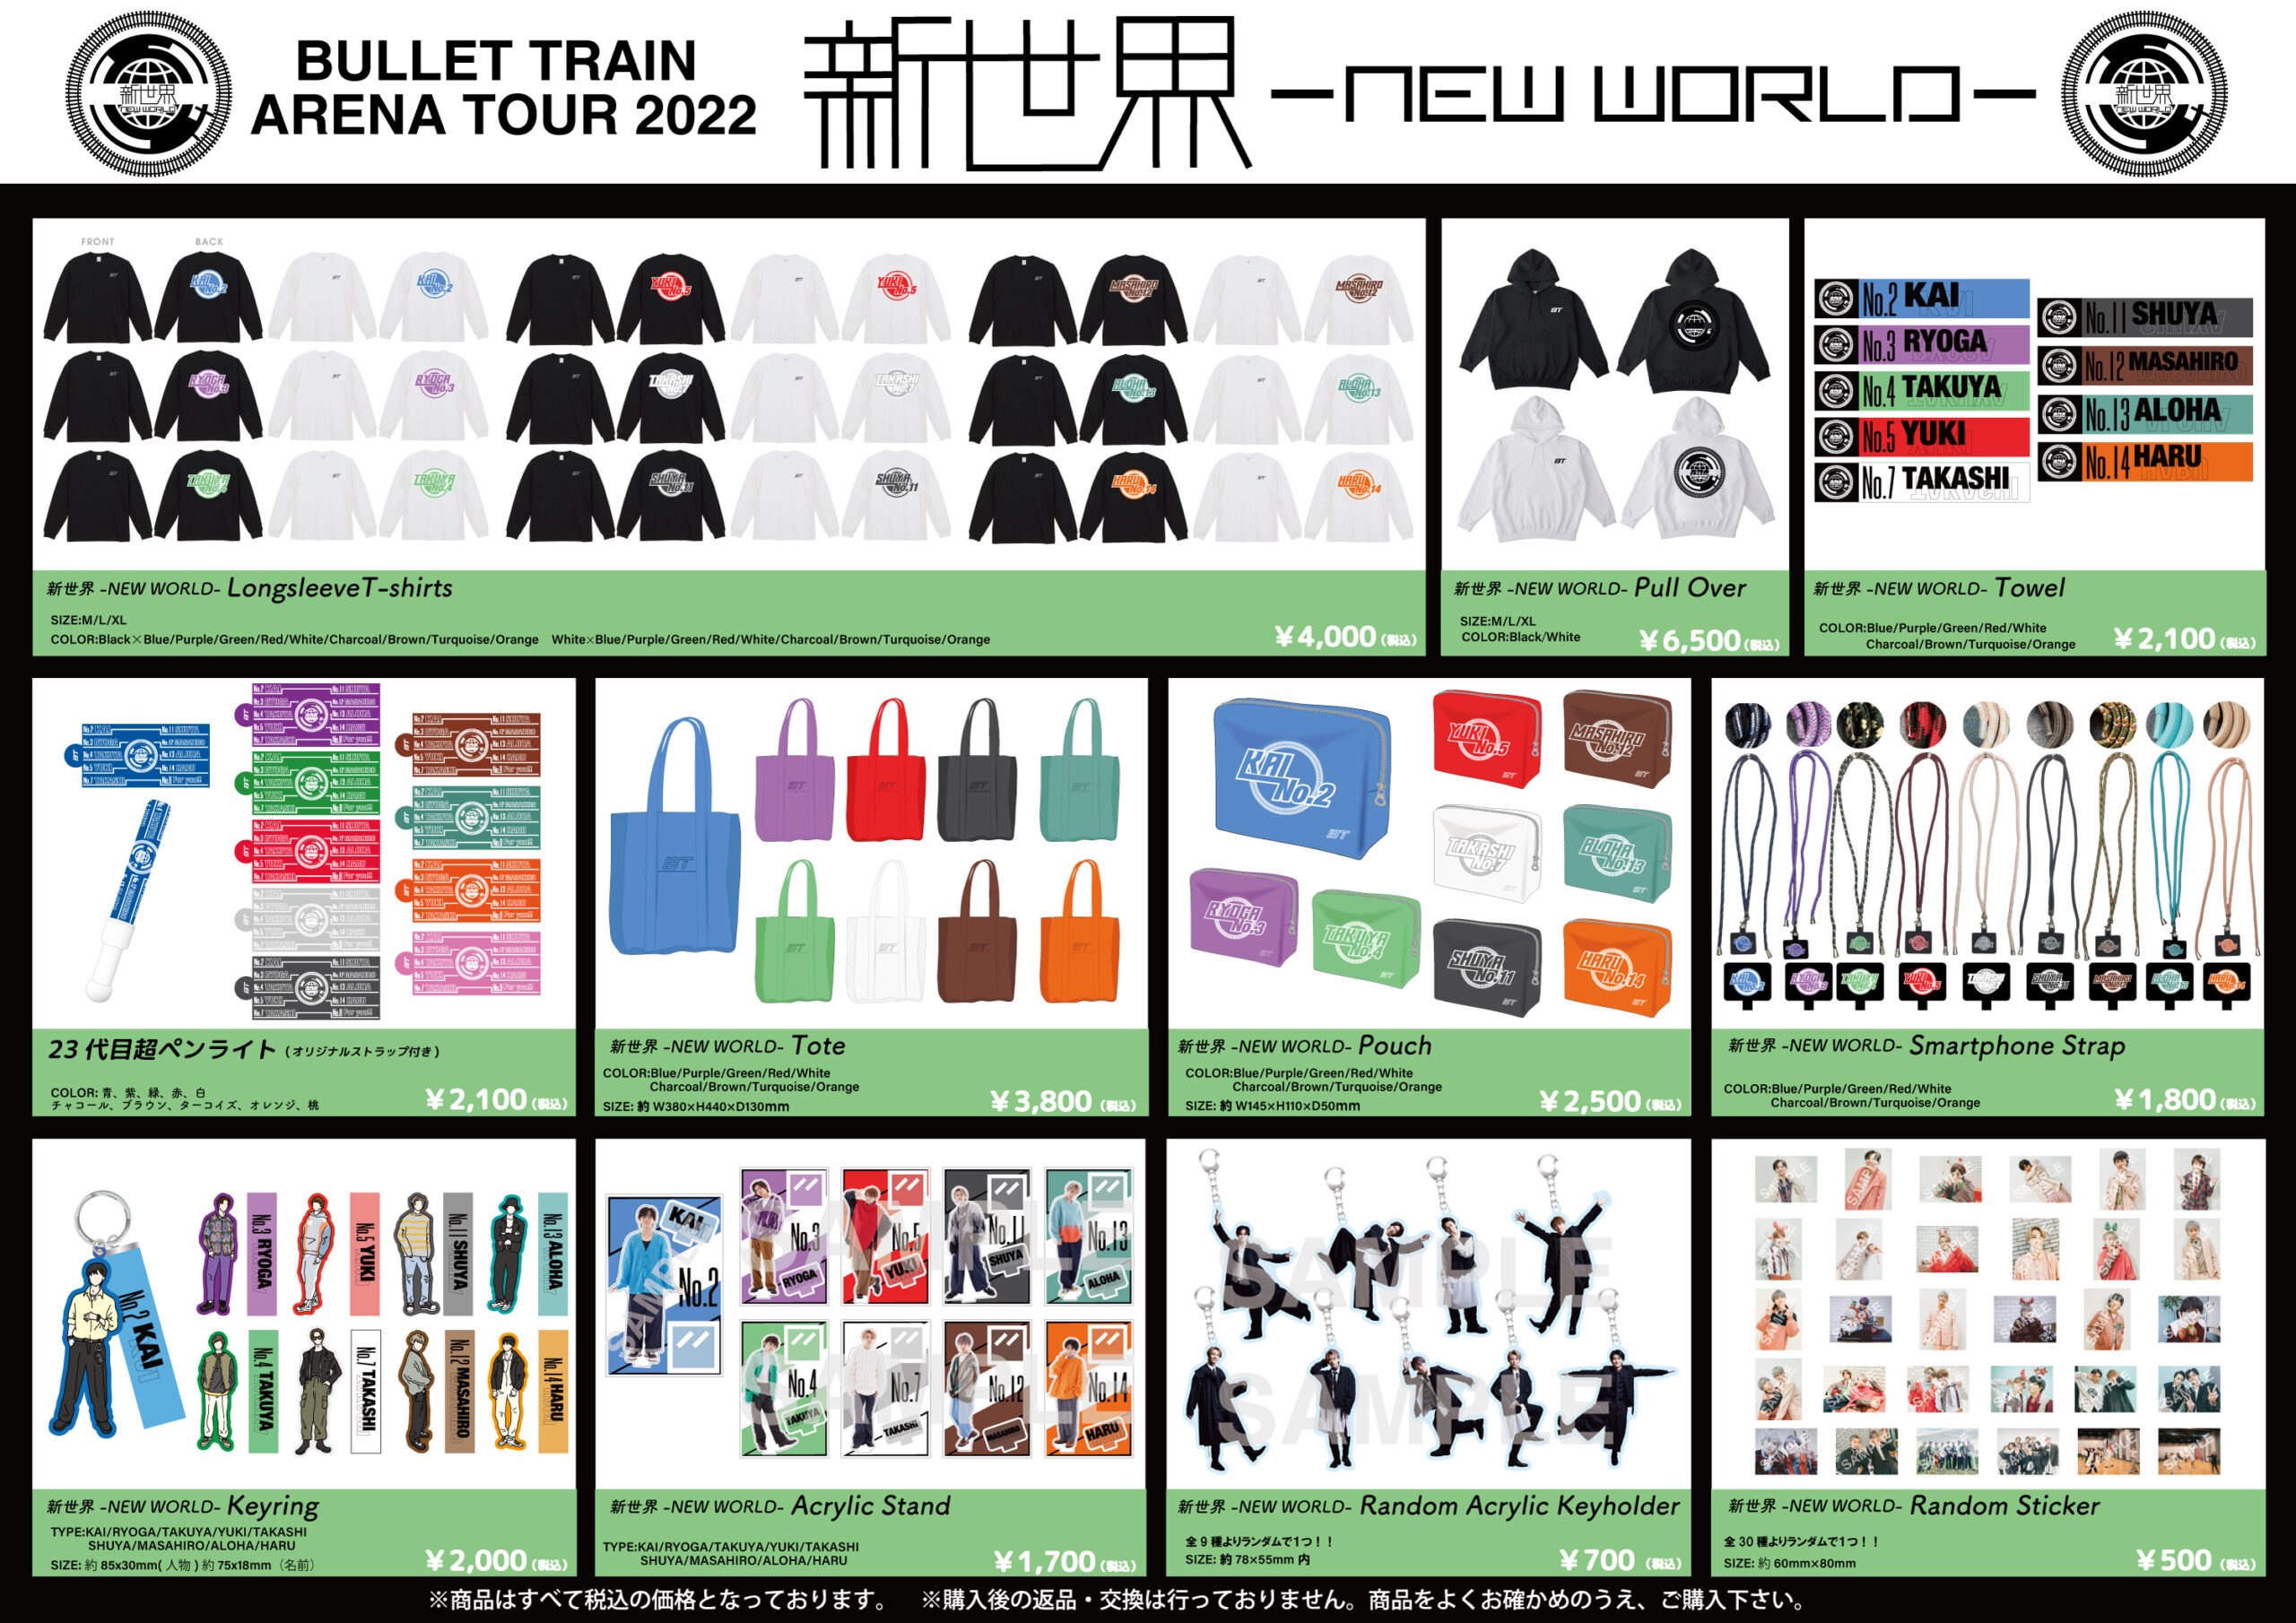 BULLET TRAIN ARENA TOUR 2022「新世界 -NEW WORLD-」オフィシャル